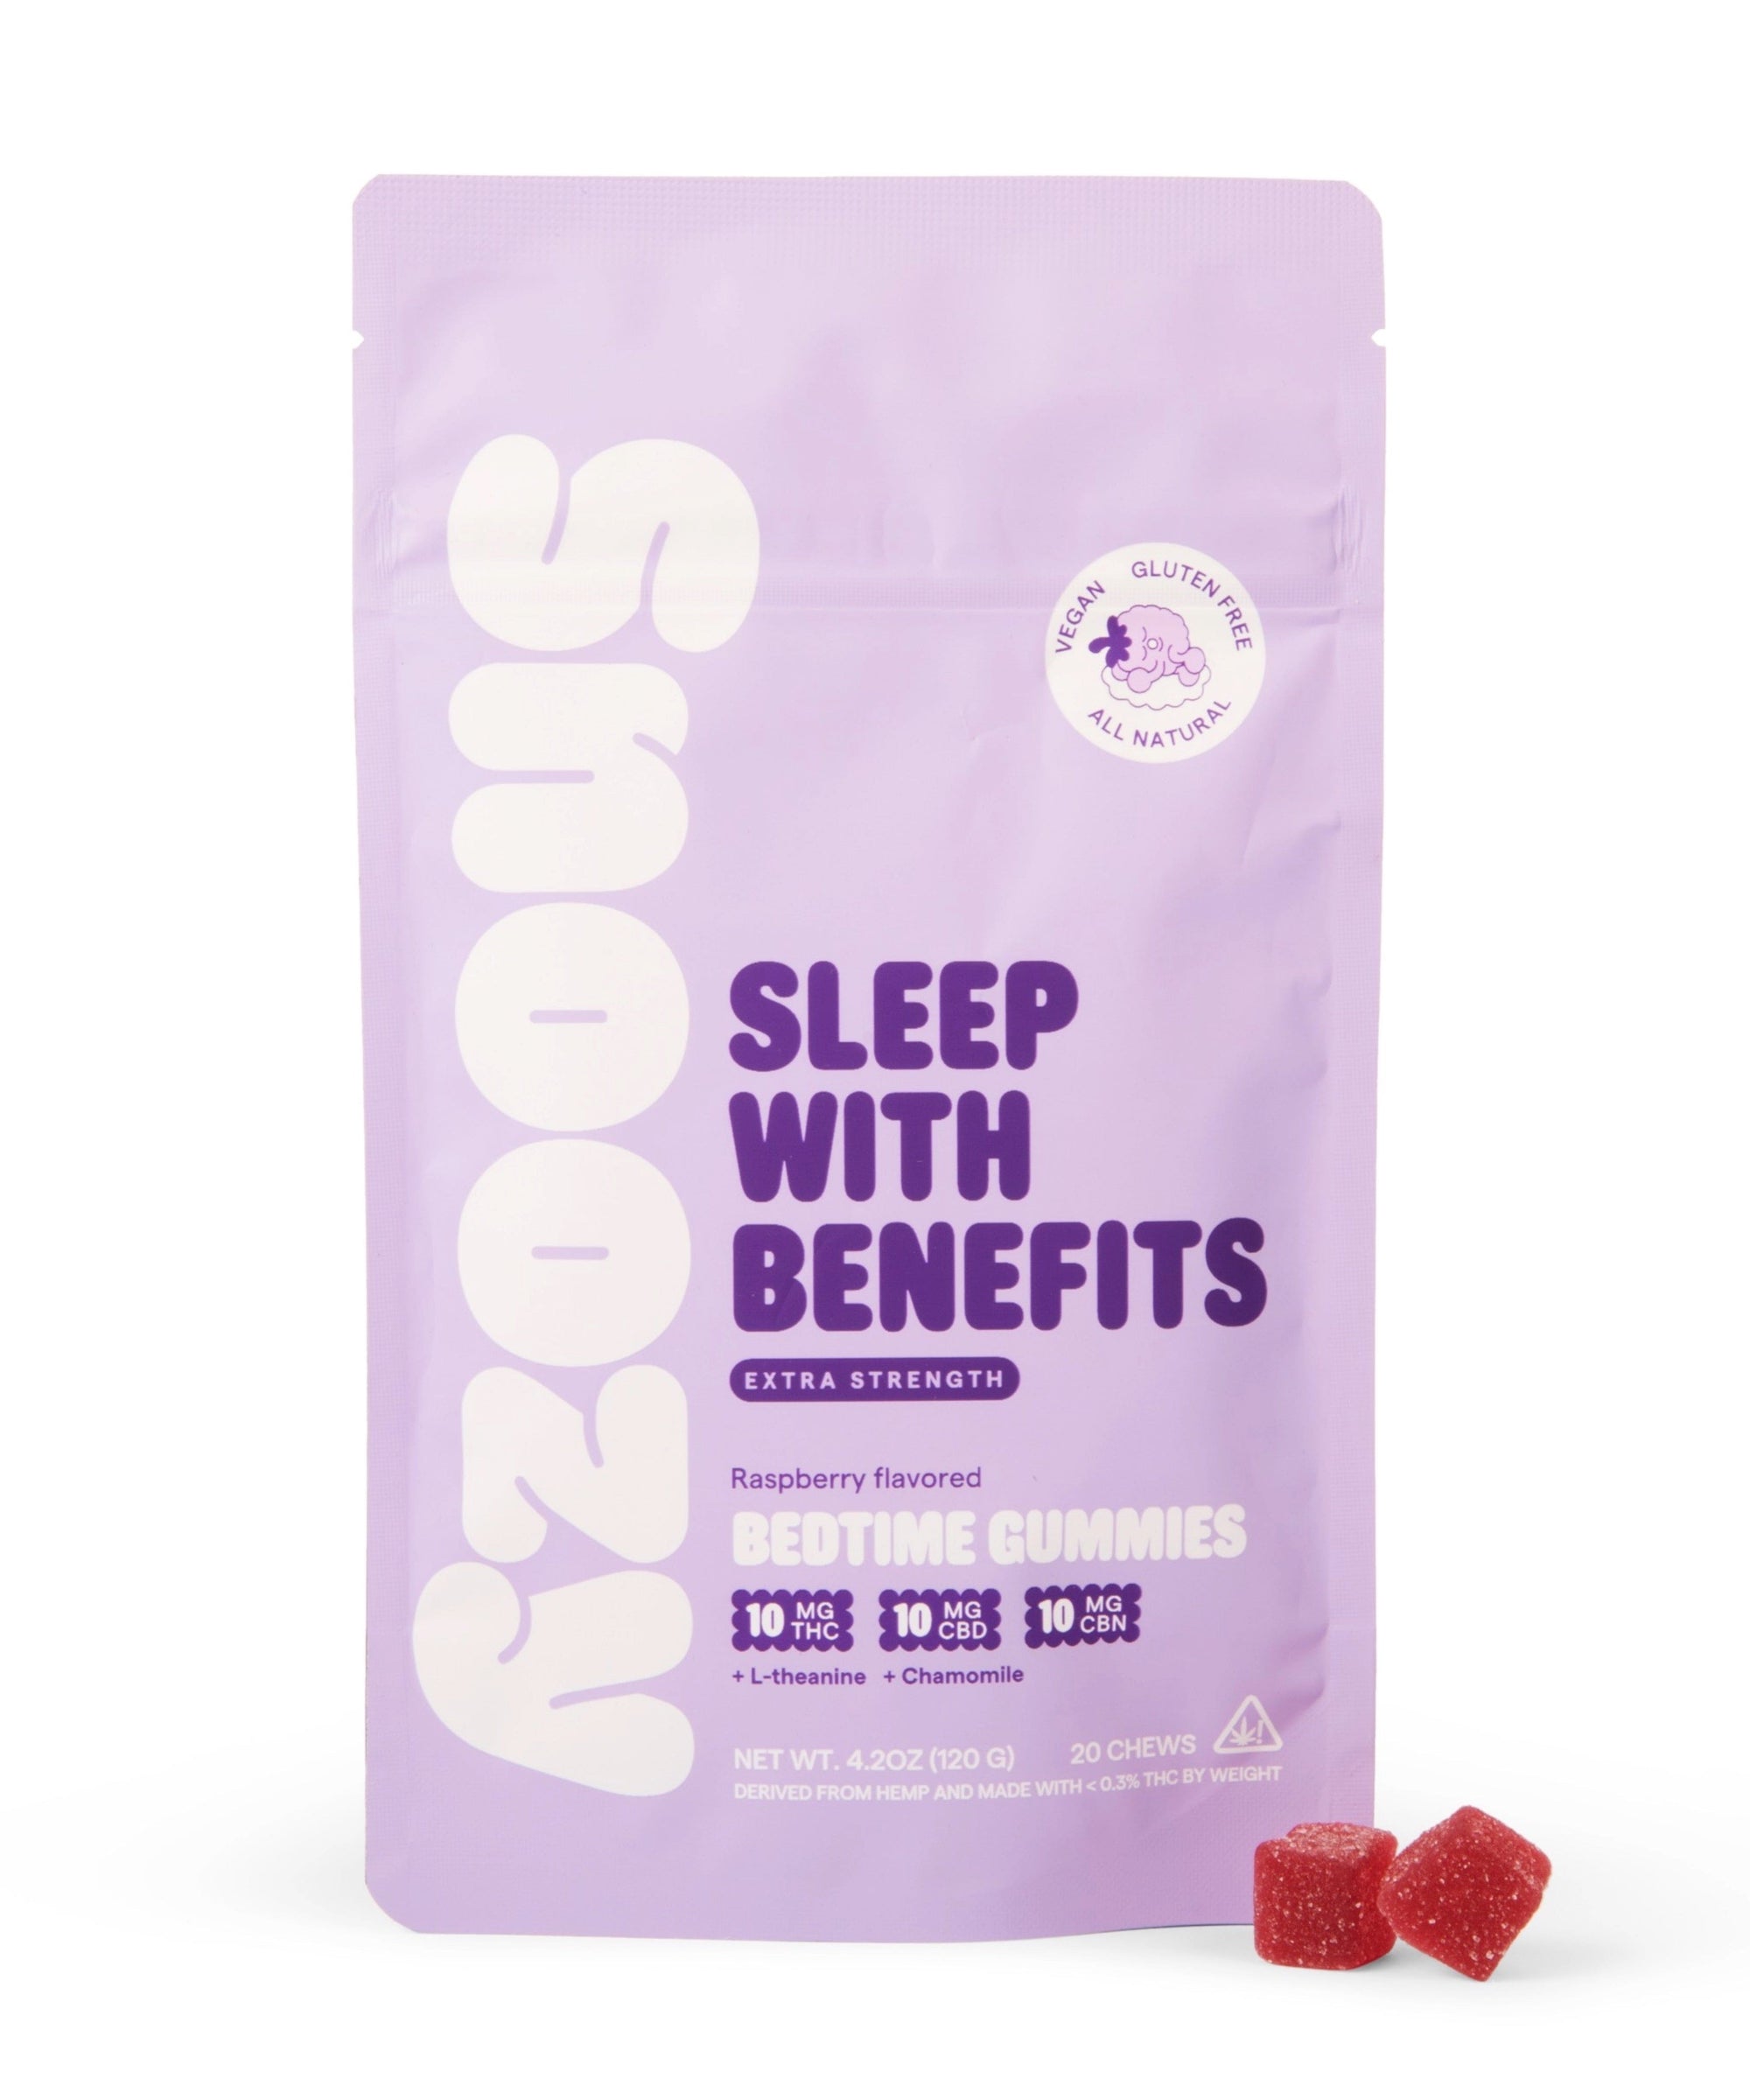 Sleep With Benefits: Bedtime Gummies